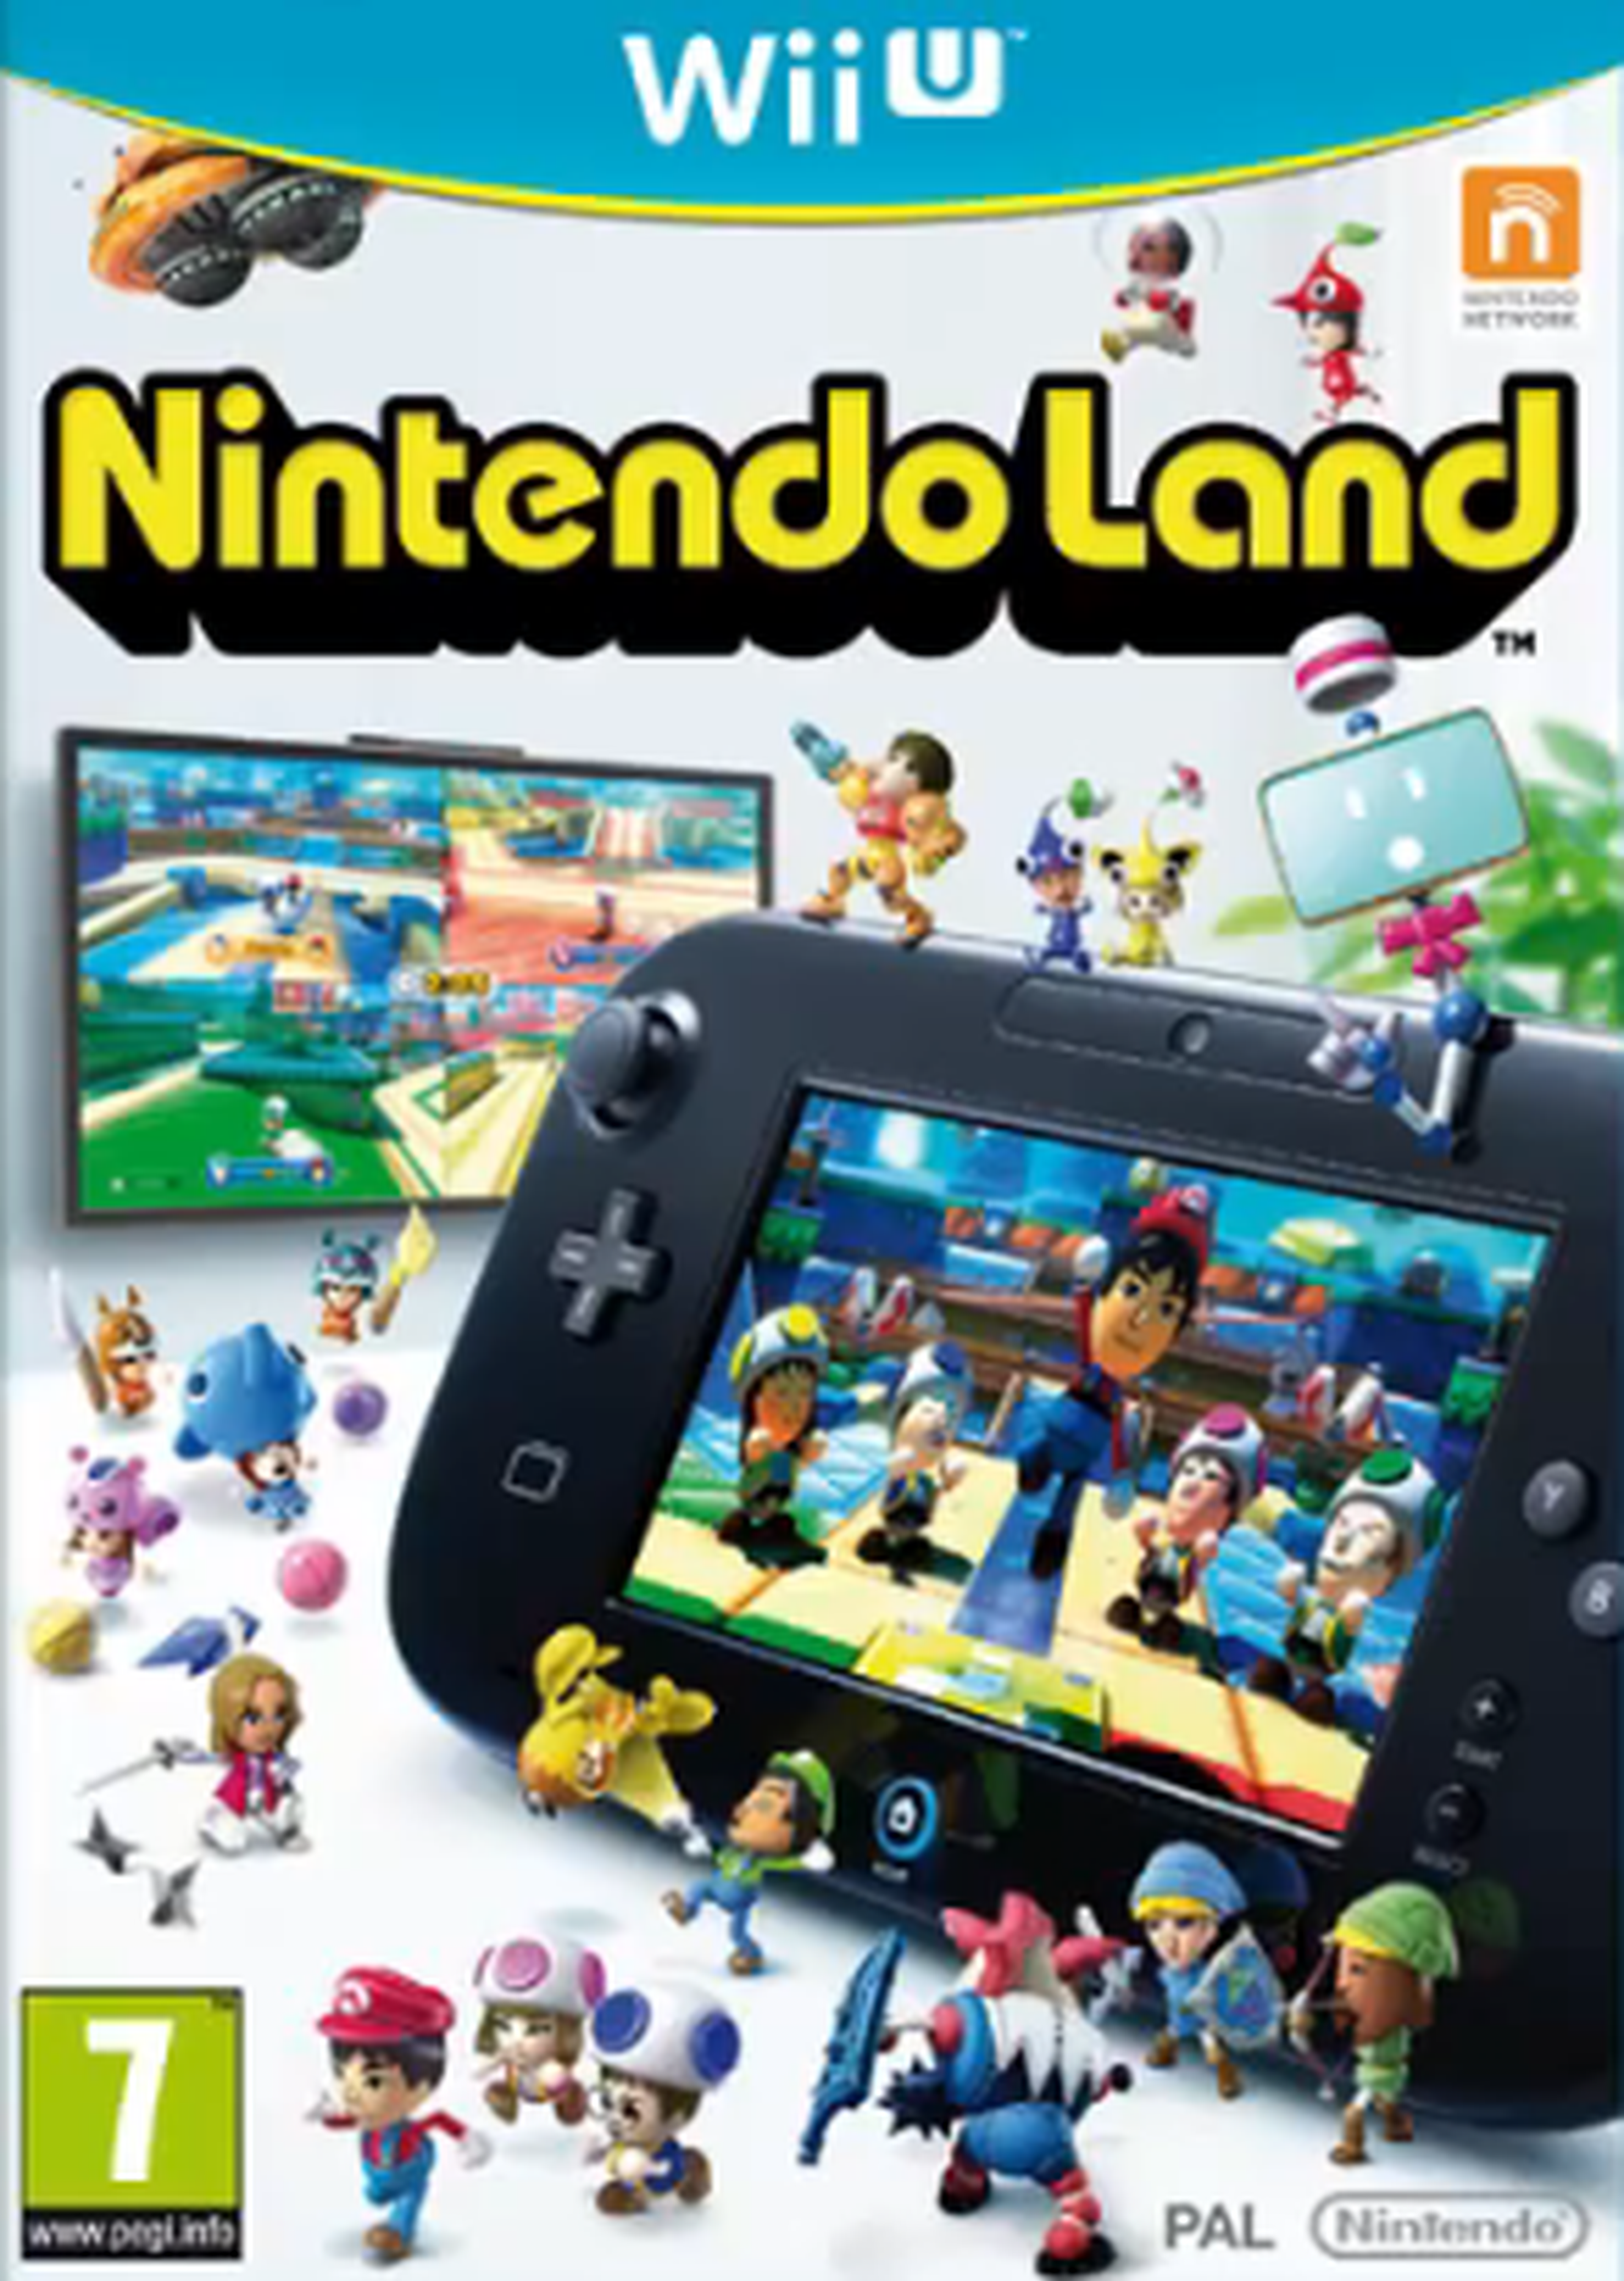 Un poco más sobre Nintendo Land